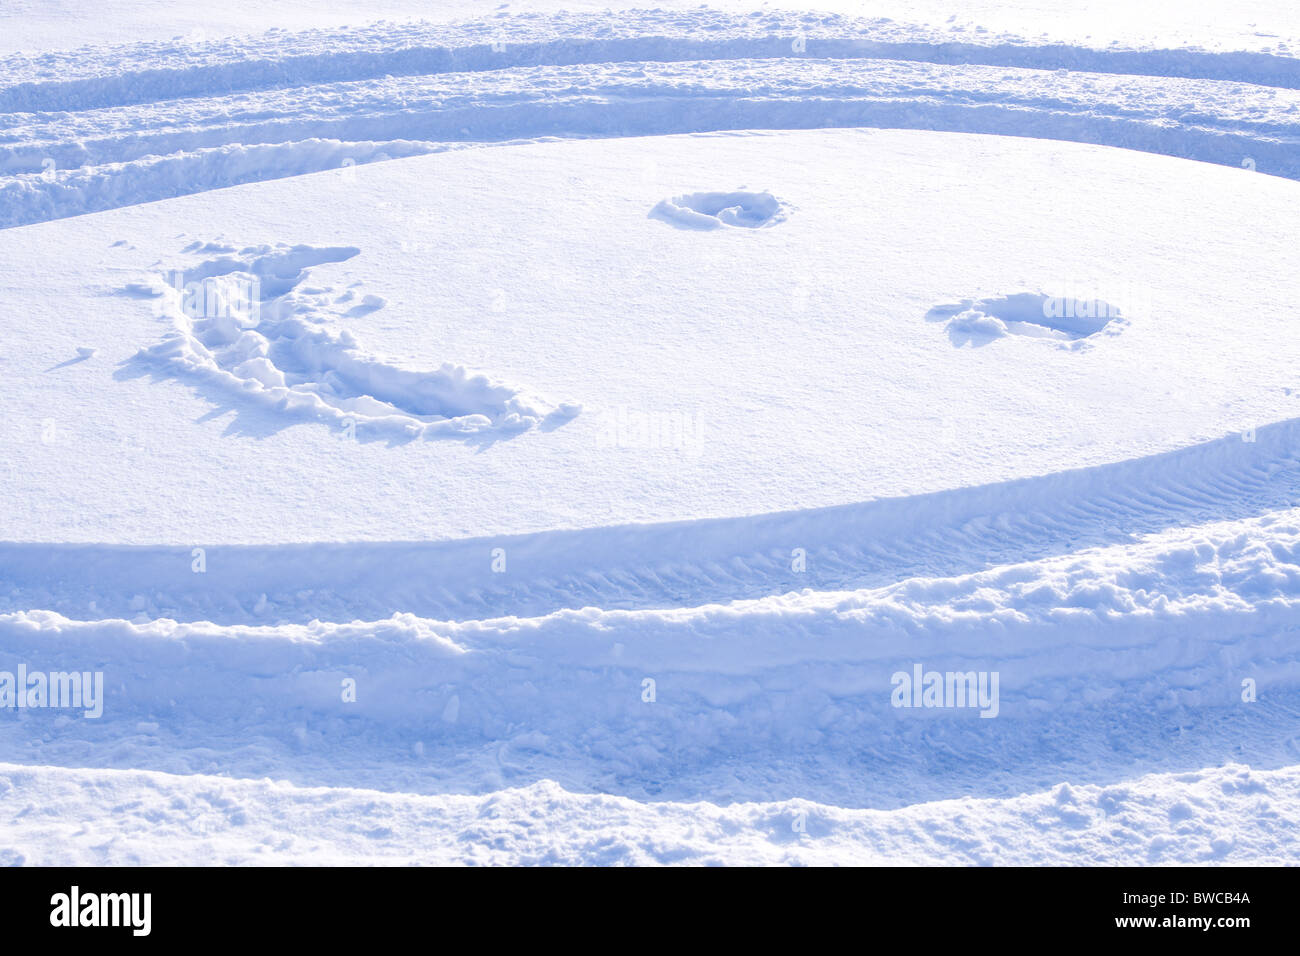 Bild des rundes Gesicht mit Augen und Lächeln gezeichnet auf Schnee Stockfoto